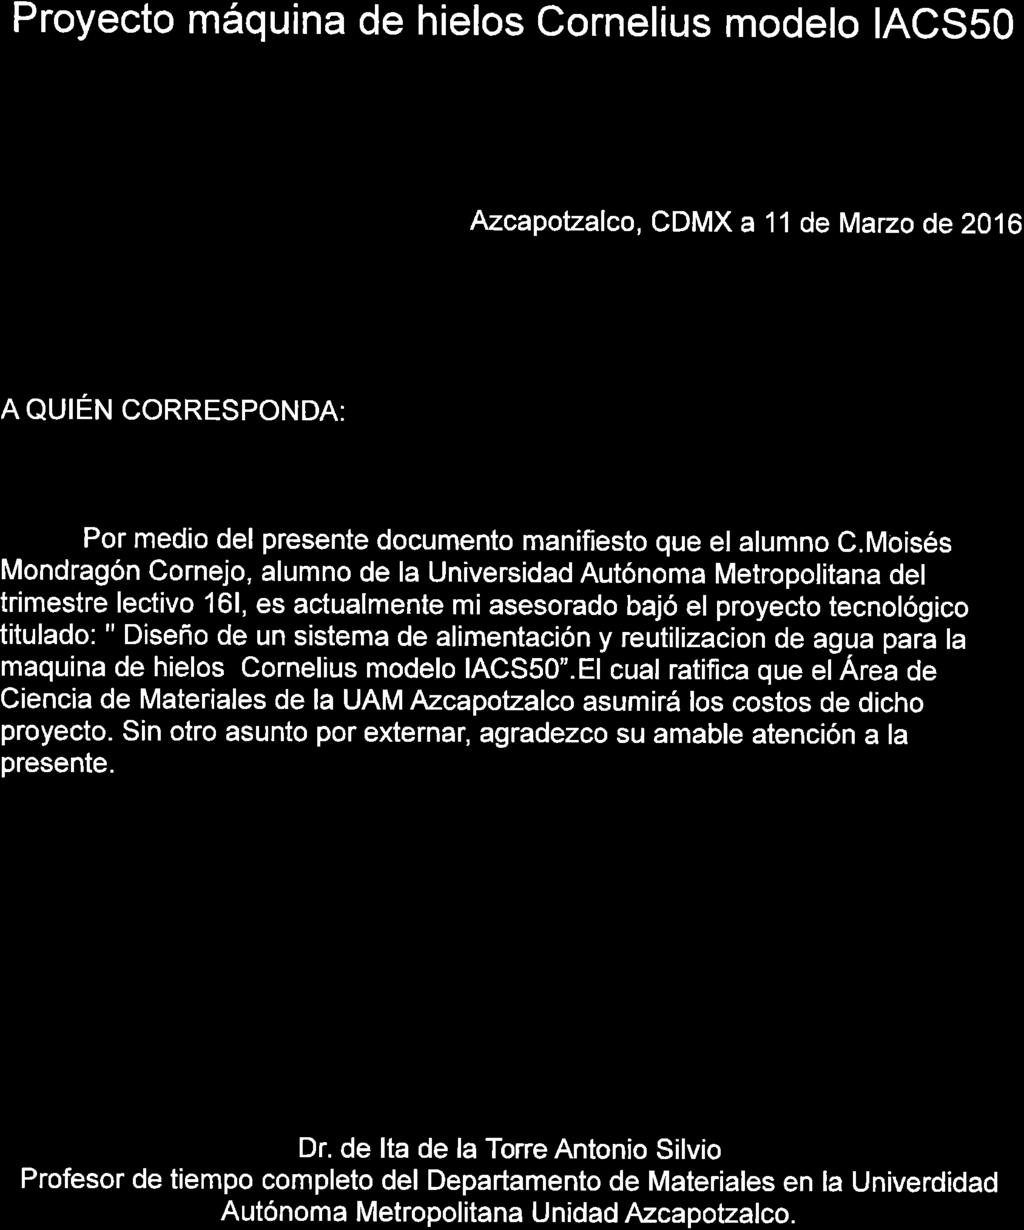 Proyecto máquina de hielos cornelius modelo ACSSO Azcapotzalco, CDMX a 11 de Marzo de 2010 n ouréru corresponda: Por medio del presente documento manifiesto que el alumno c.